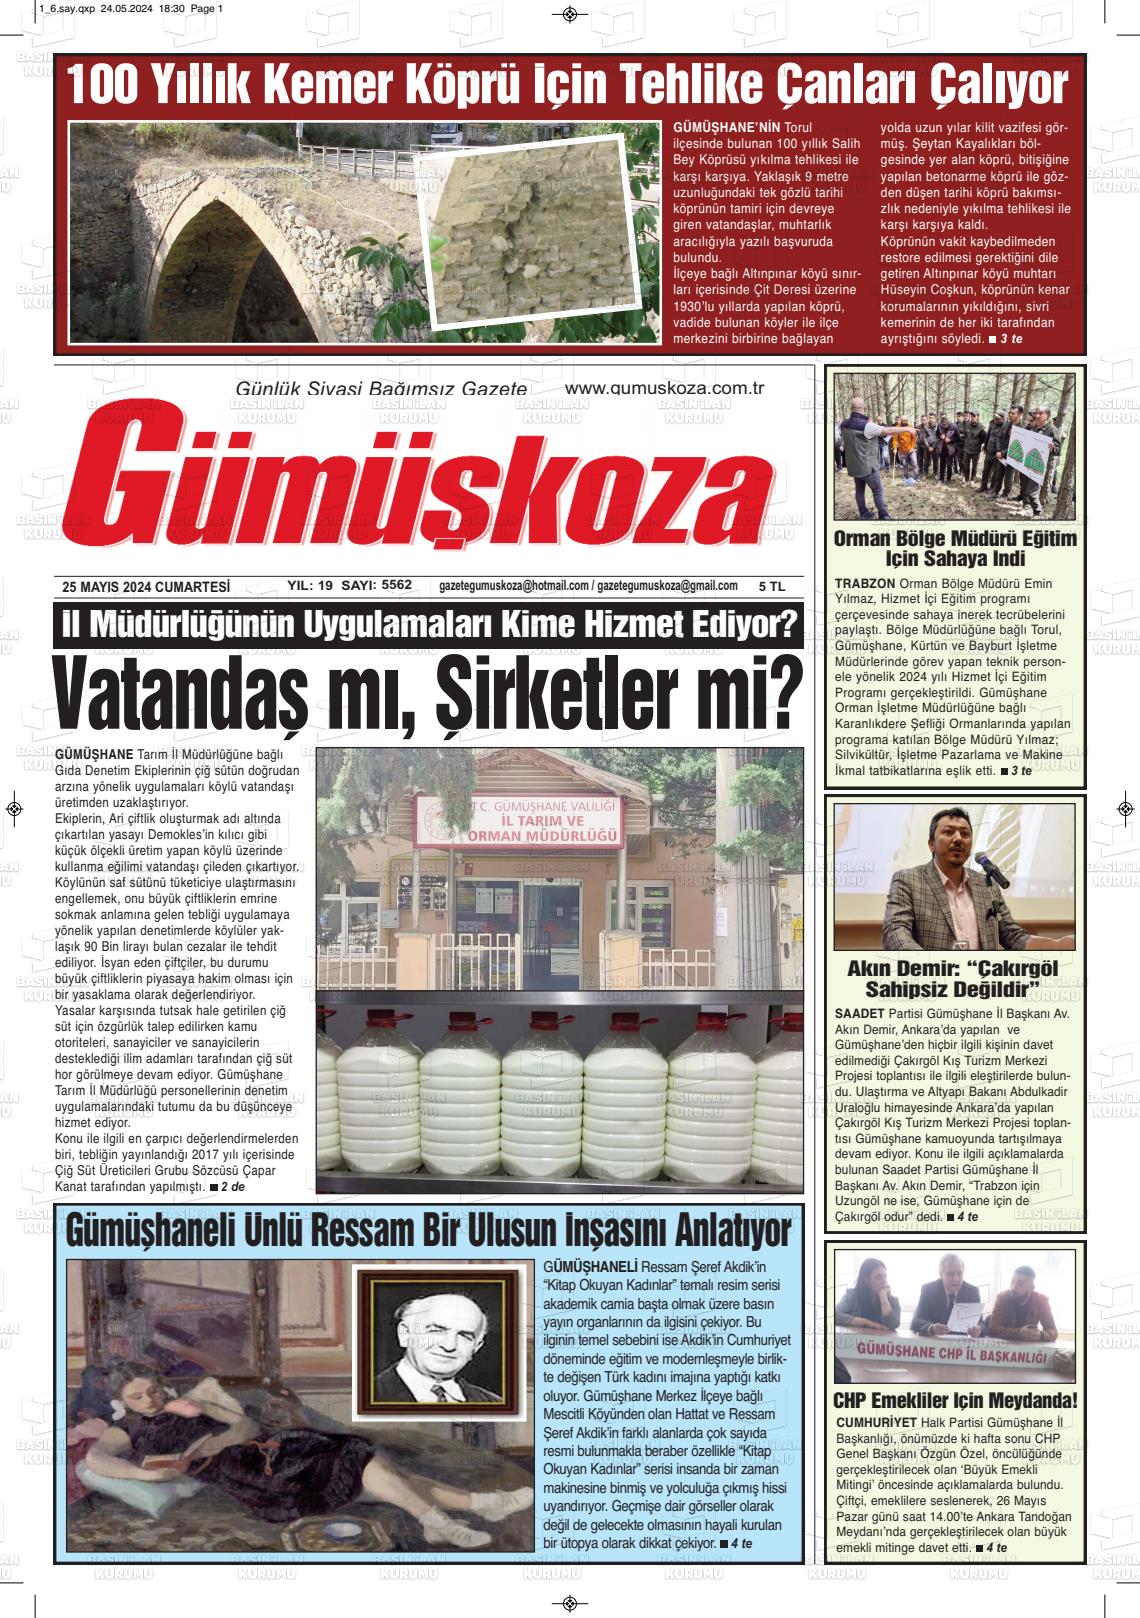 GÜMÜŞKOZA Gazetesi